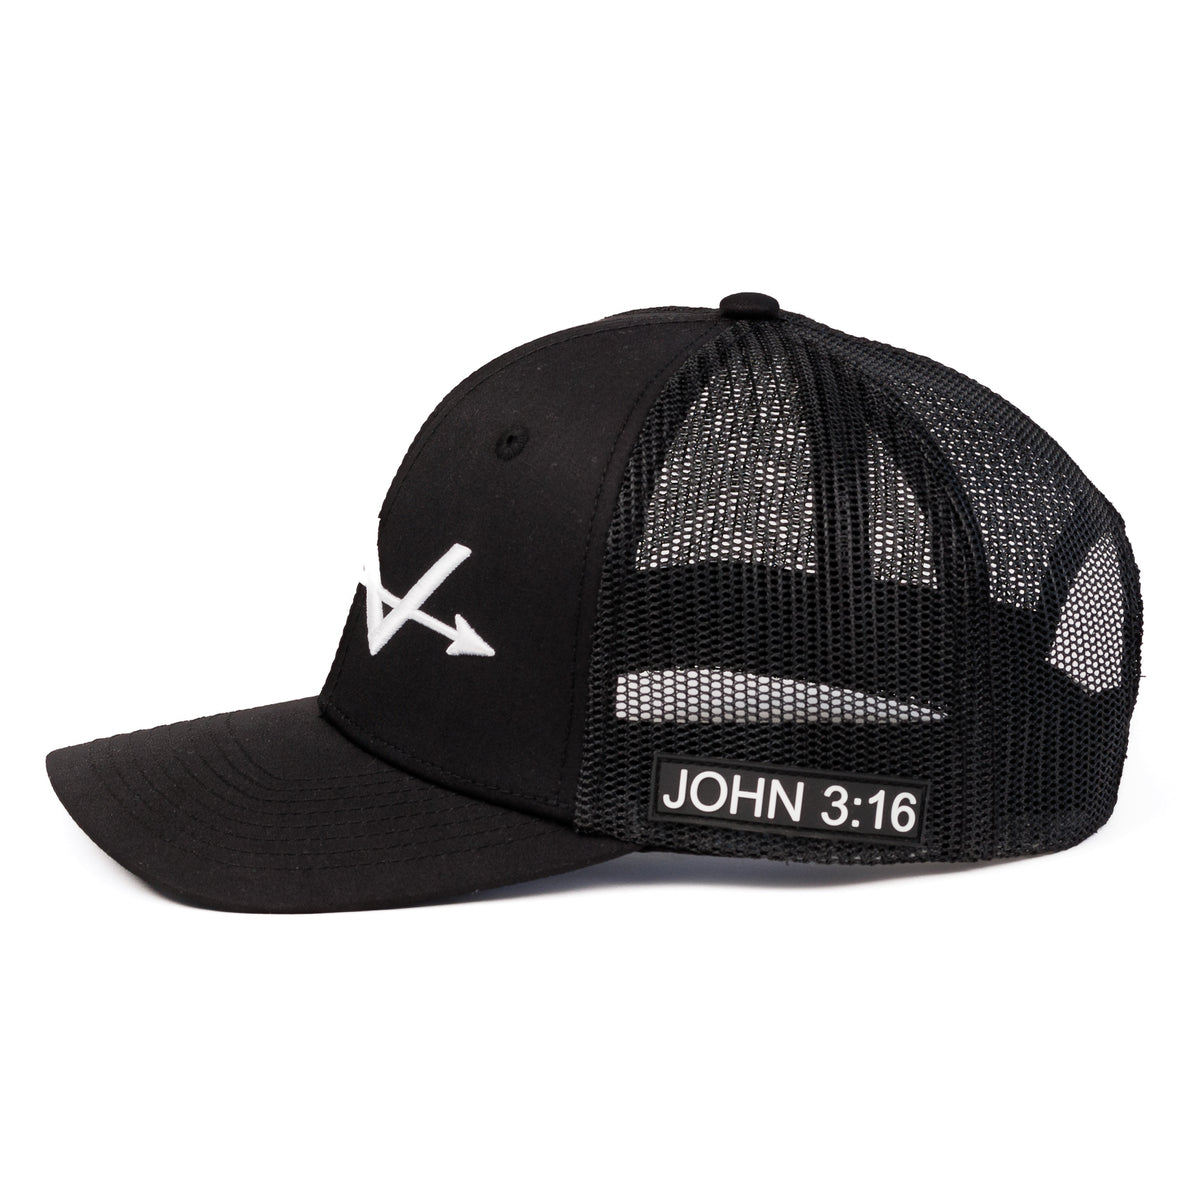 John 3:16 (Black)